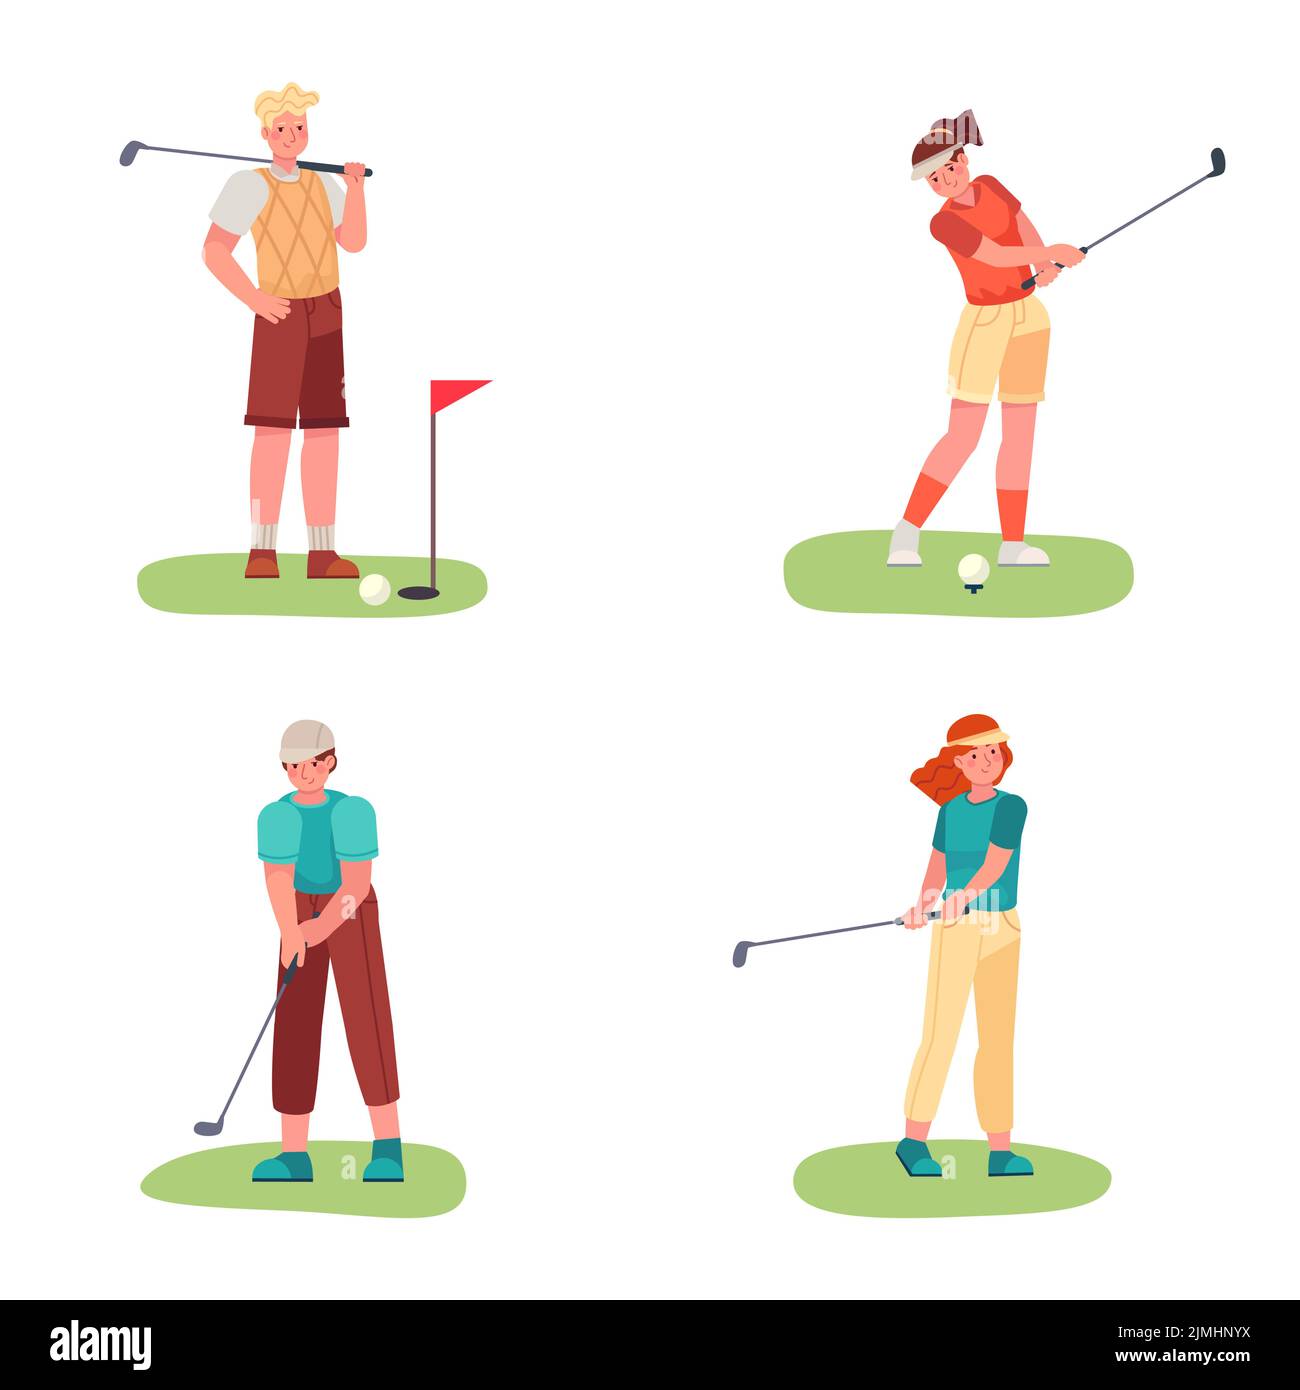 Golf spielen. Weibliche und männliche Charaktere trainieren mit Golfschlägern, schlagen Ball. Spieler, die Sport auf grünem Rasen treiben. Menschen, die ein aktives Hobby haben. Out Stock Vektor